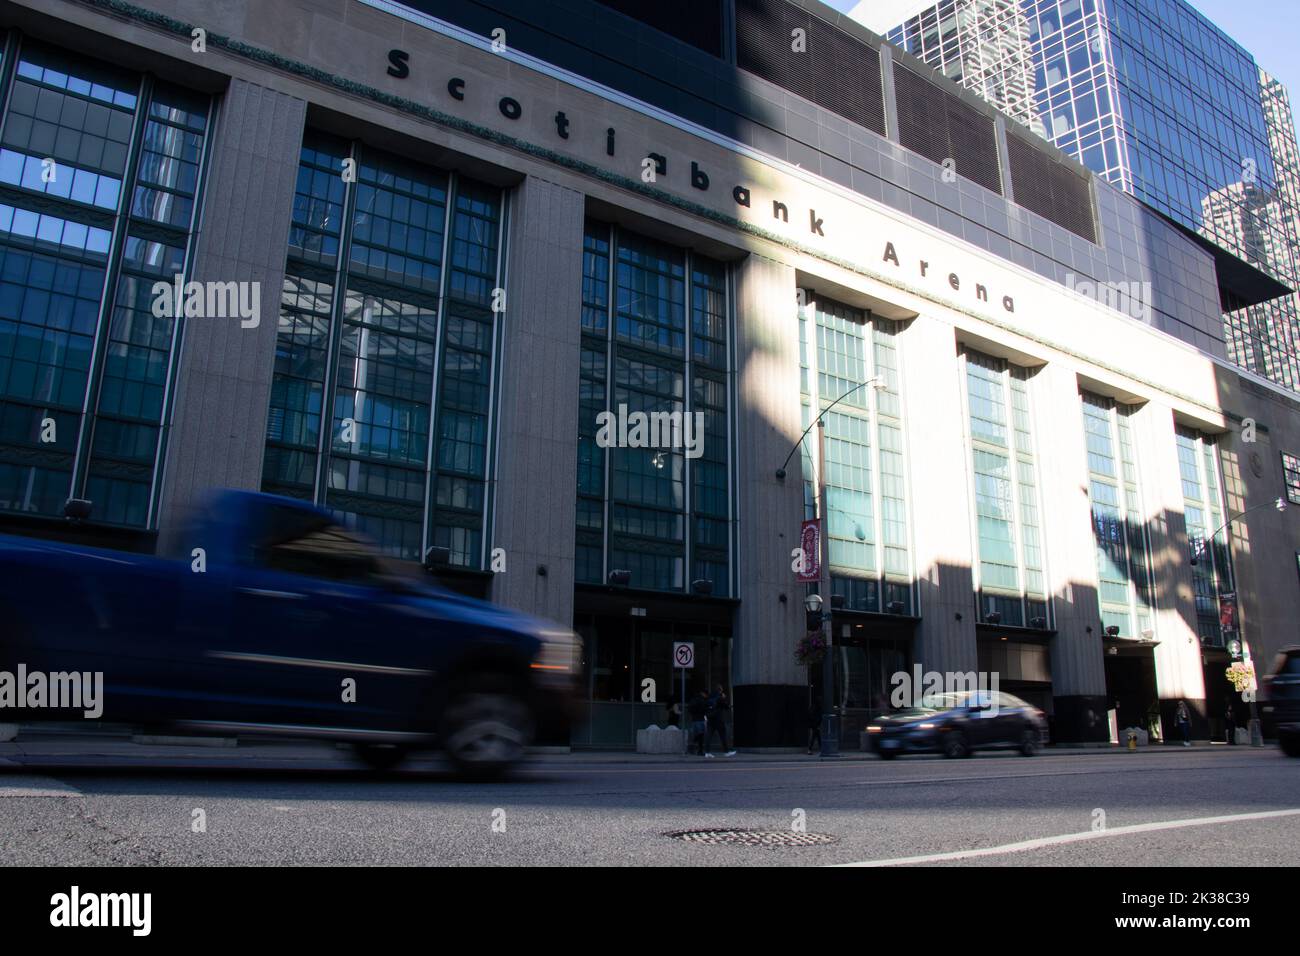 Une aréna ombragée de la Banque Scotia est vue comme la lumière du soleil du matin brille dans le centre-ville de Toronto; la circulation de la rue, floue, passe par. Banque D'Images